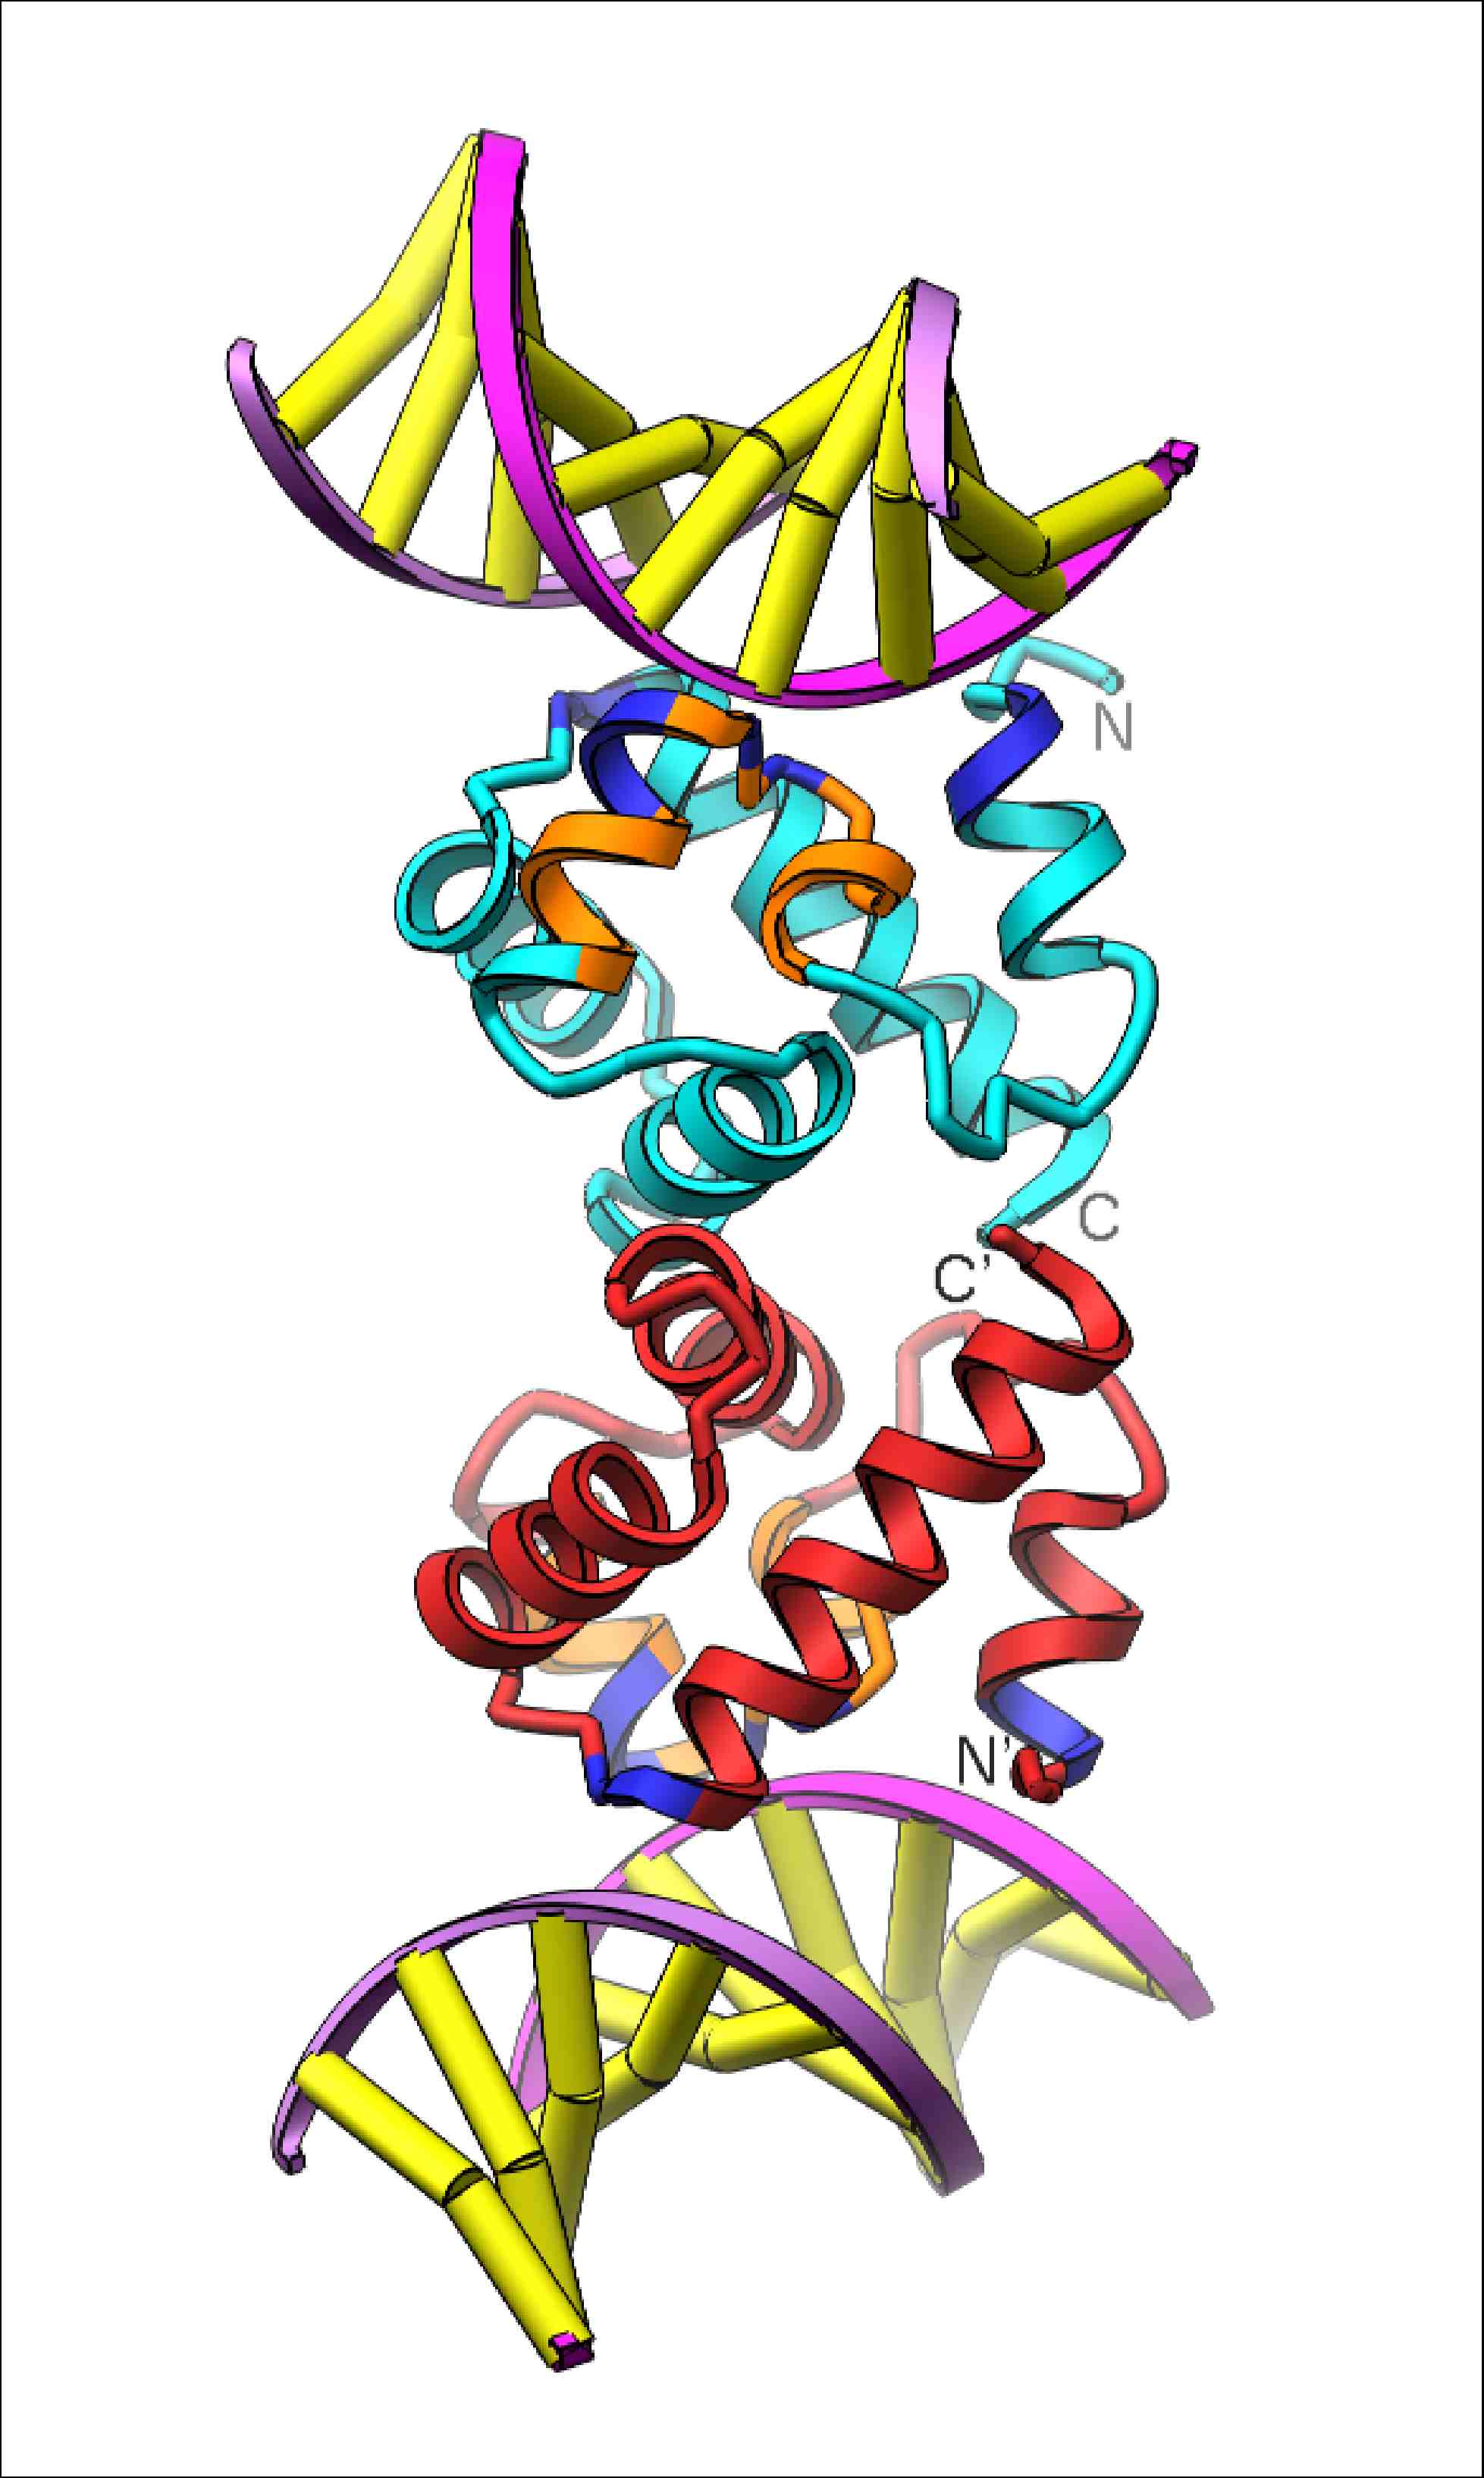 BAF-DNA Interaction